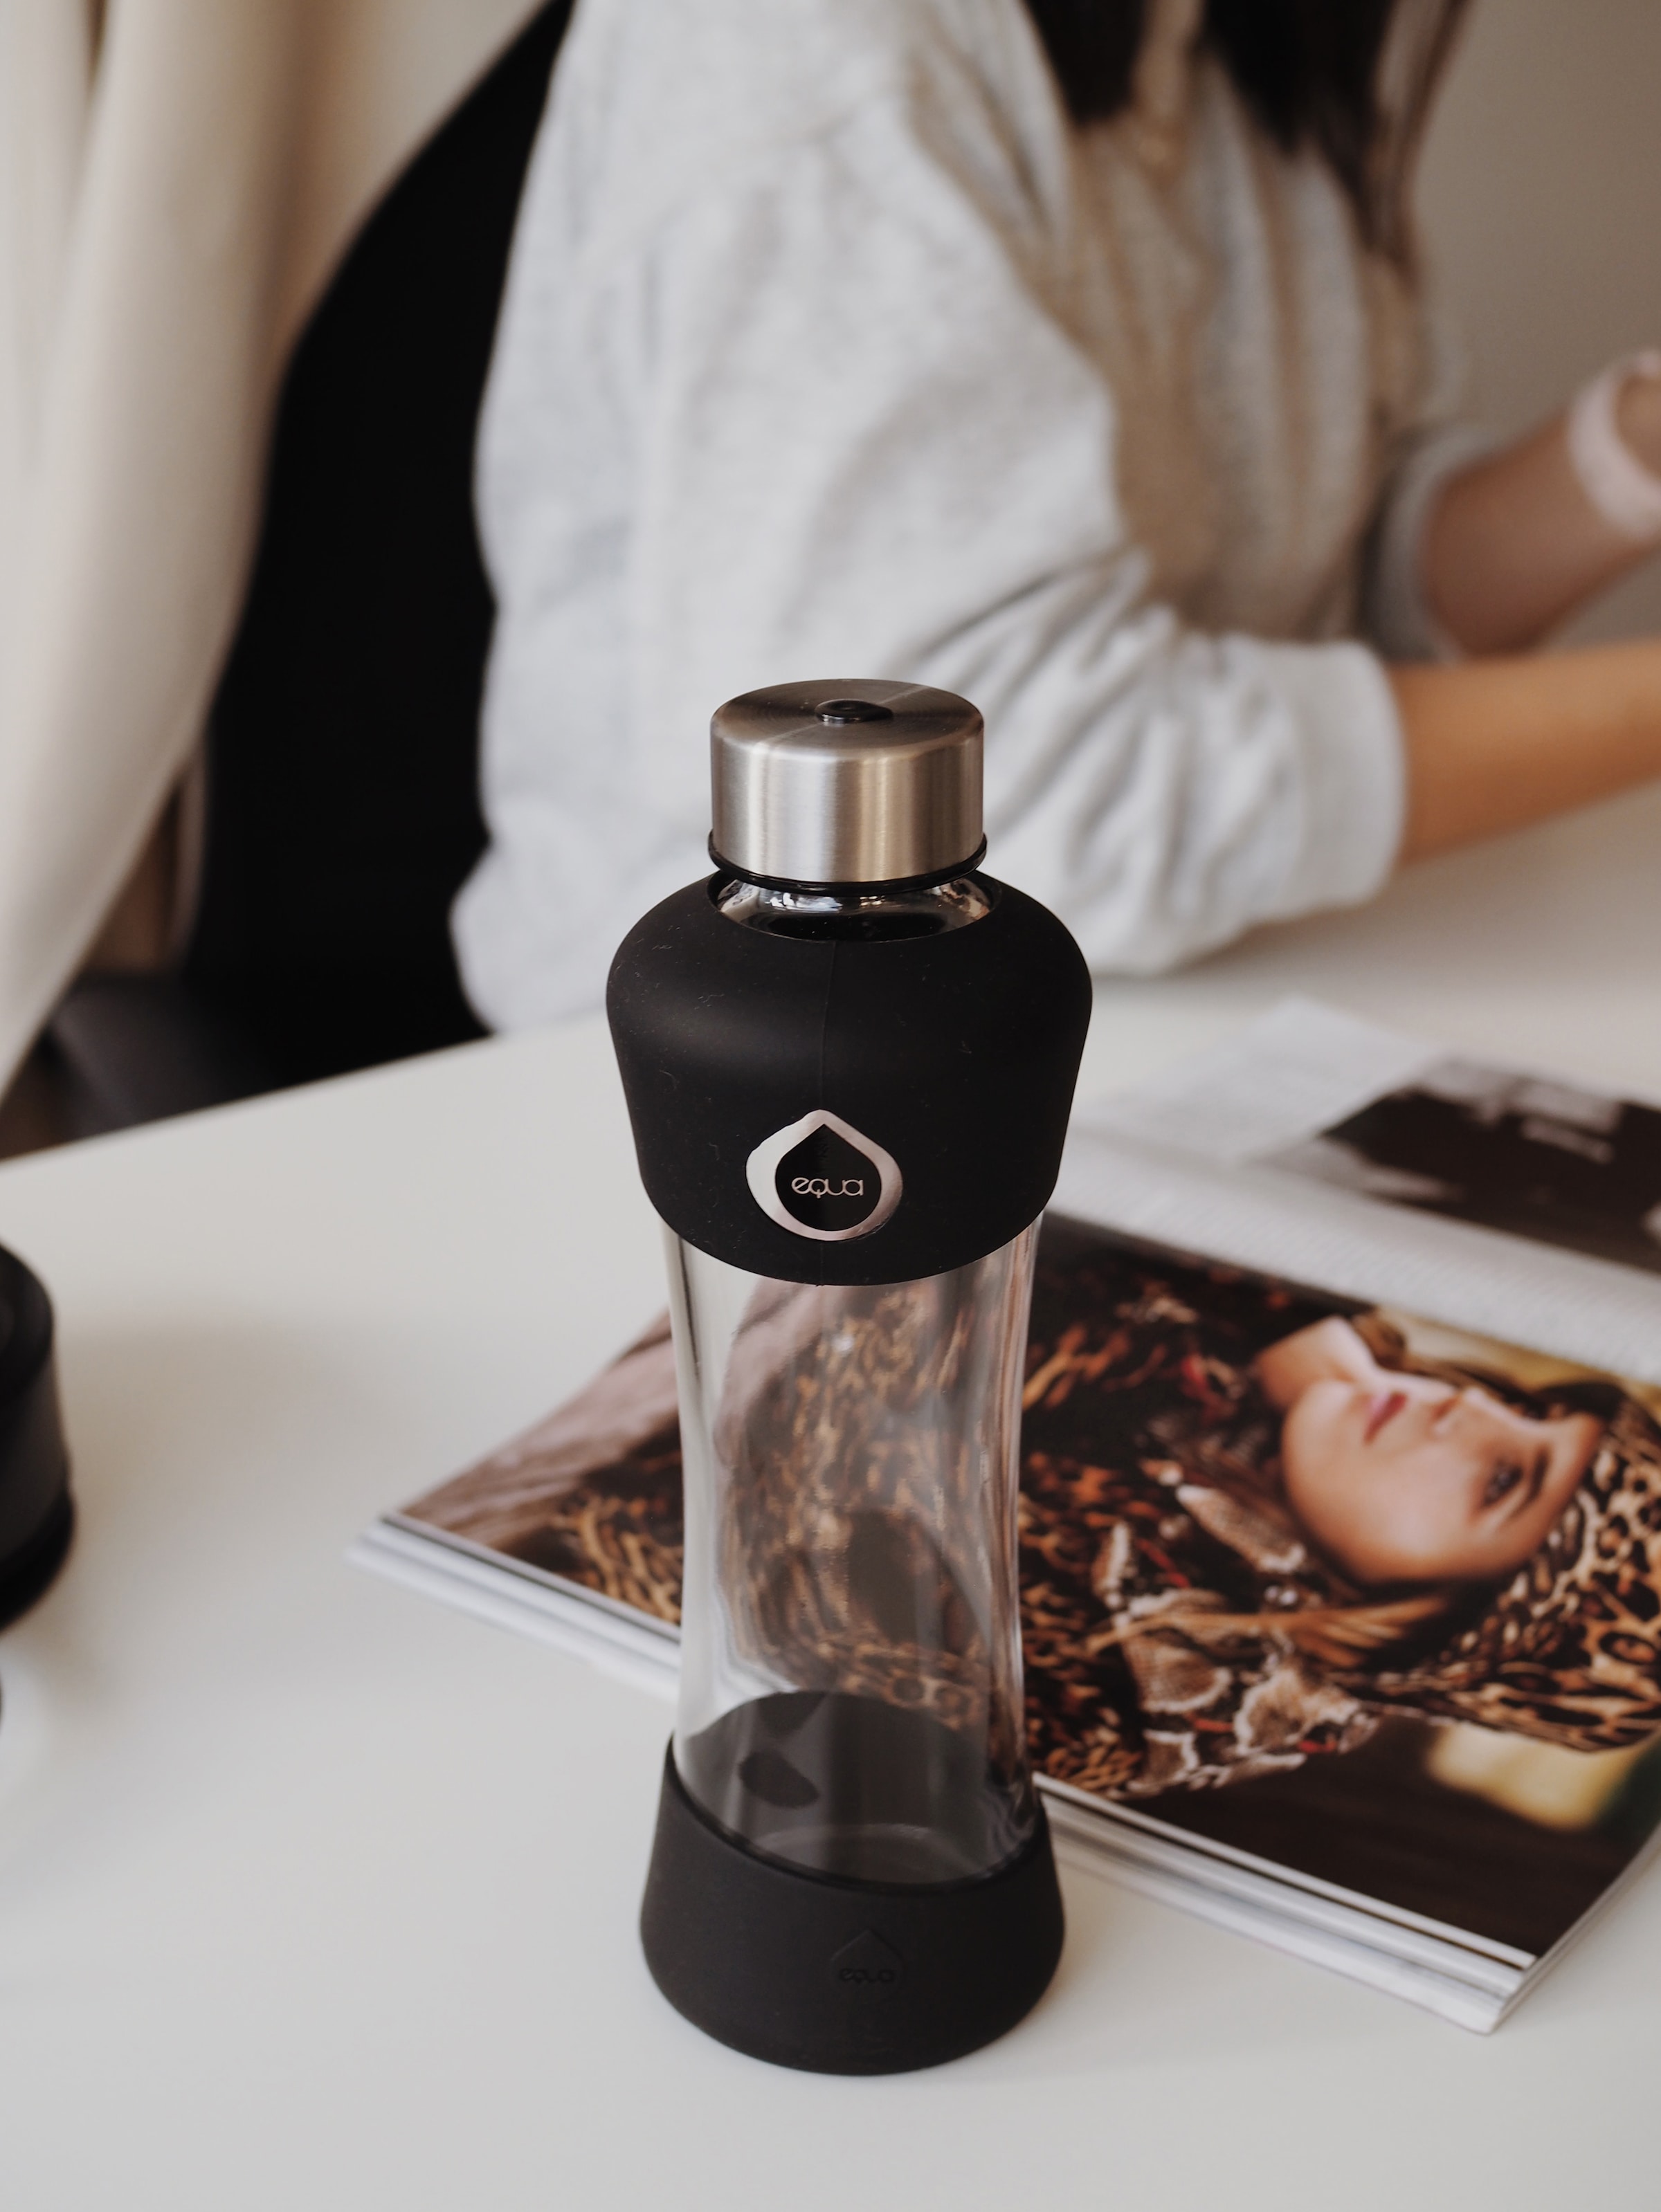 equa Trinkflasche »Active black«, Borosilikatglas, ideal für Freizeitaktivitäten, 550 ml